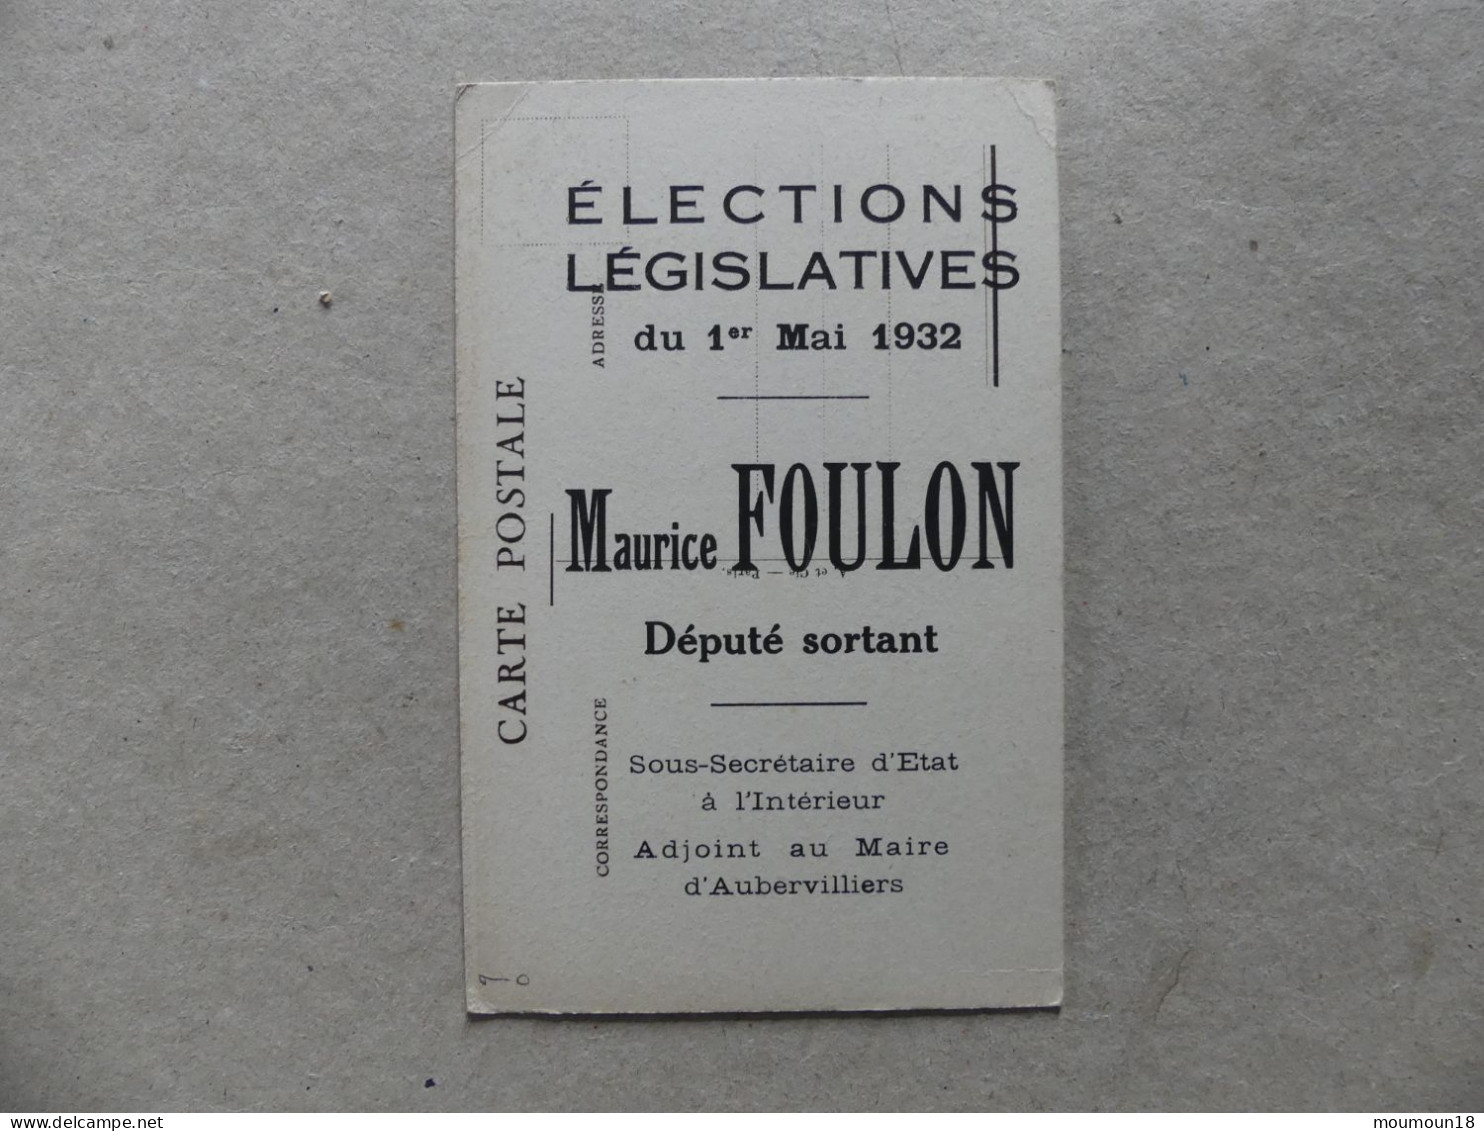 Maurice Foulon Elections Législatives 1932 Député Sortant Sous-Secrétaire D'Etat Intérieur Adjoint Maire Aubervilliers - Uomini Politici E Militari